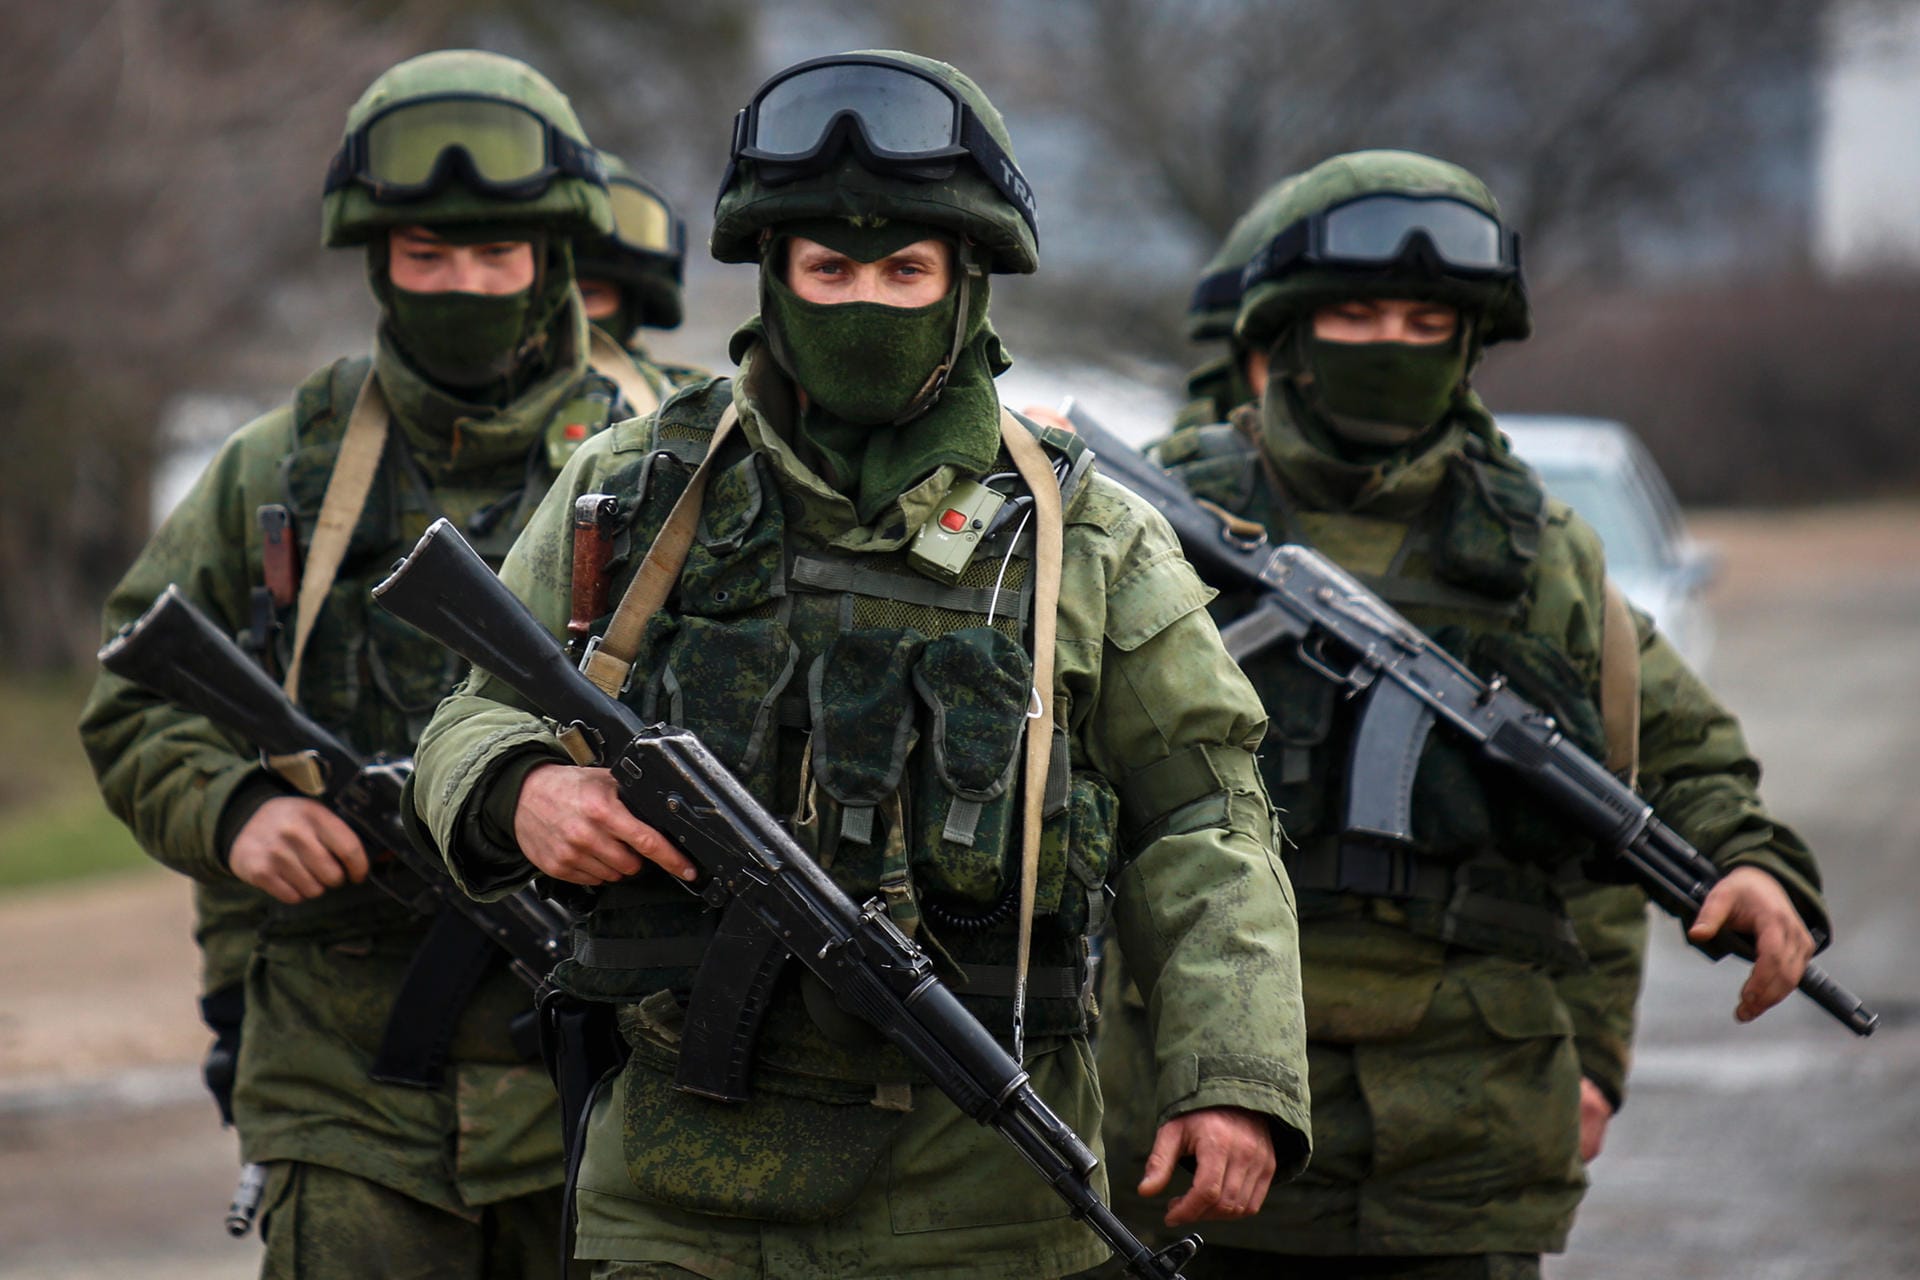 Die sogenannten "grünen Männchen" erschienen im März 2014 auf der Krim – Soldaten ohne Kennzeichnung übernahmen die Kontrolle der Halbinsel. Dann annektierte Russland das ukrainische Gebiet.